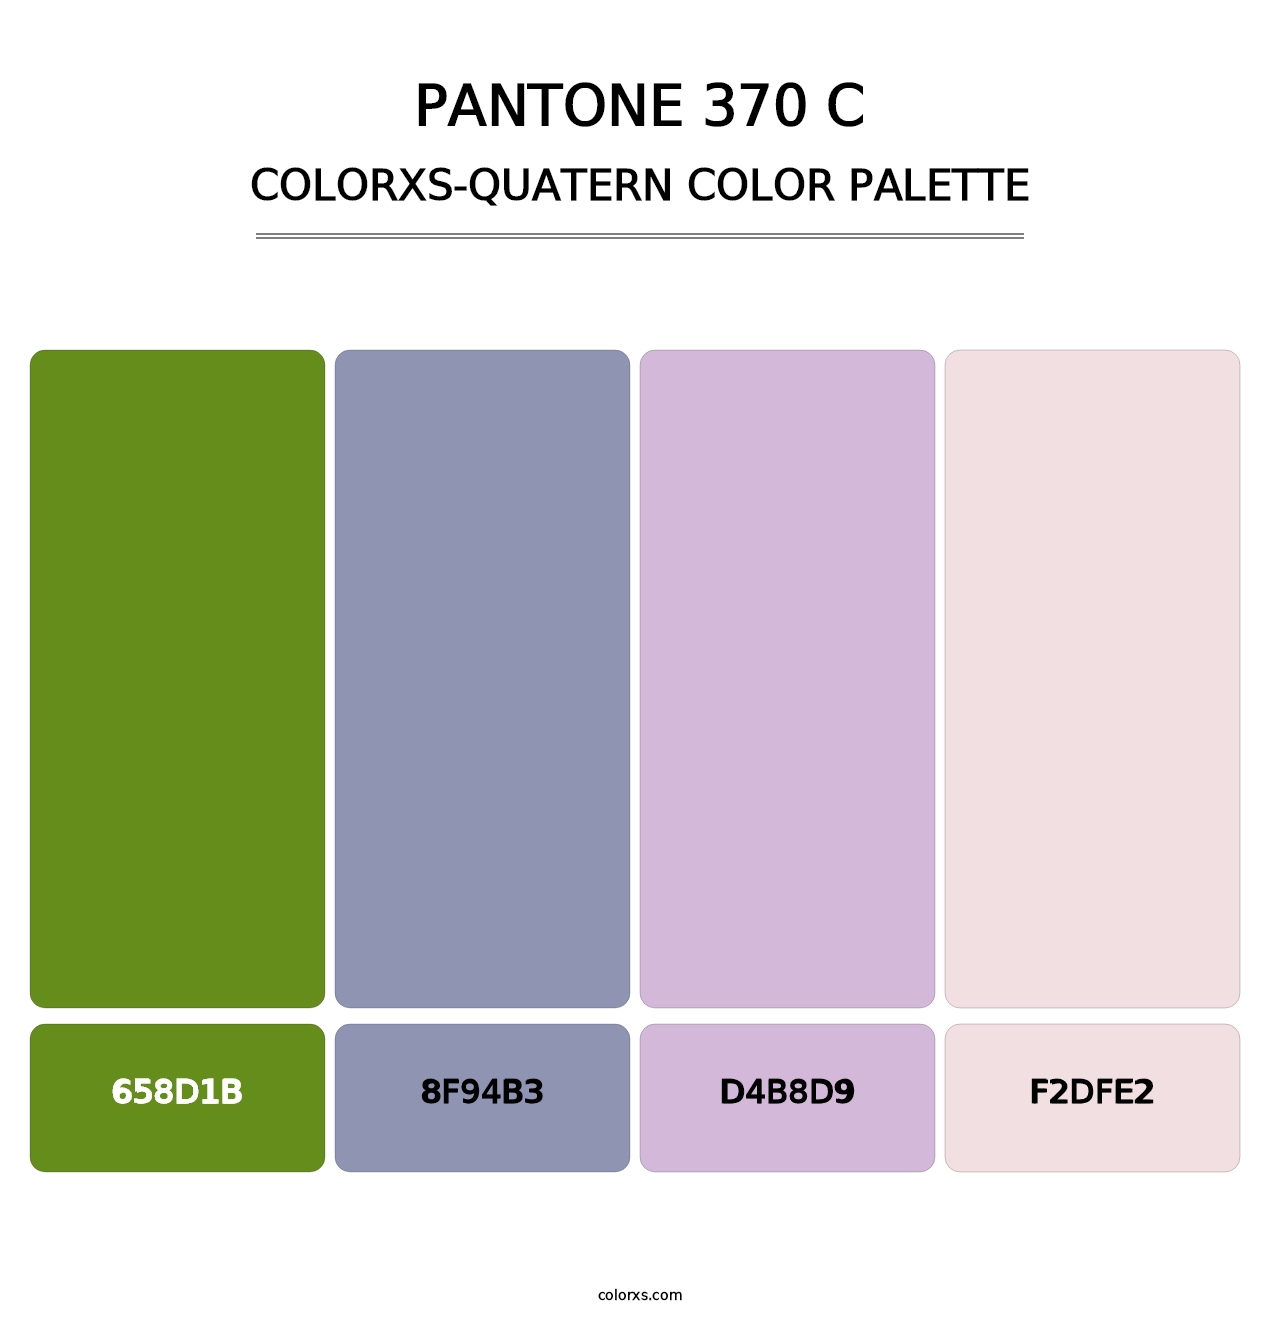 PANTONE 370 C - Colorxs Quatern Palette